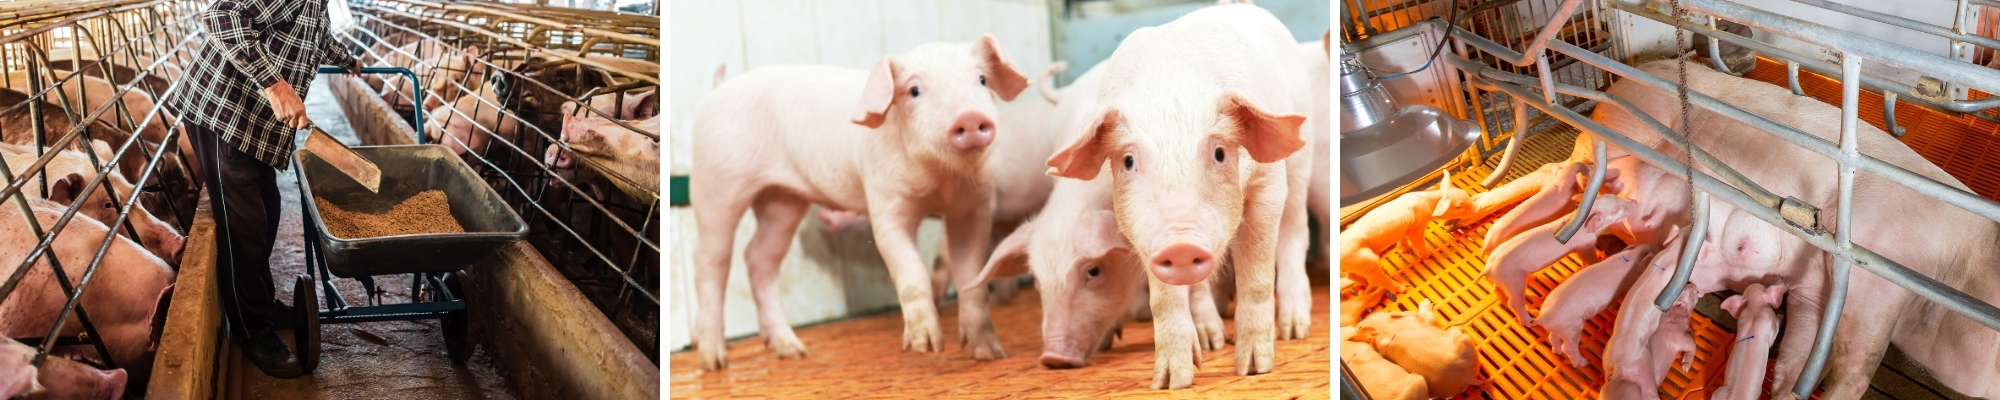 Swine Industry Financing